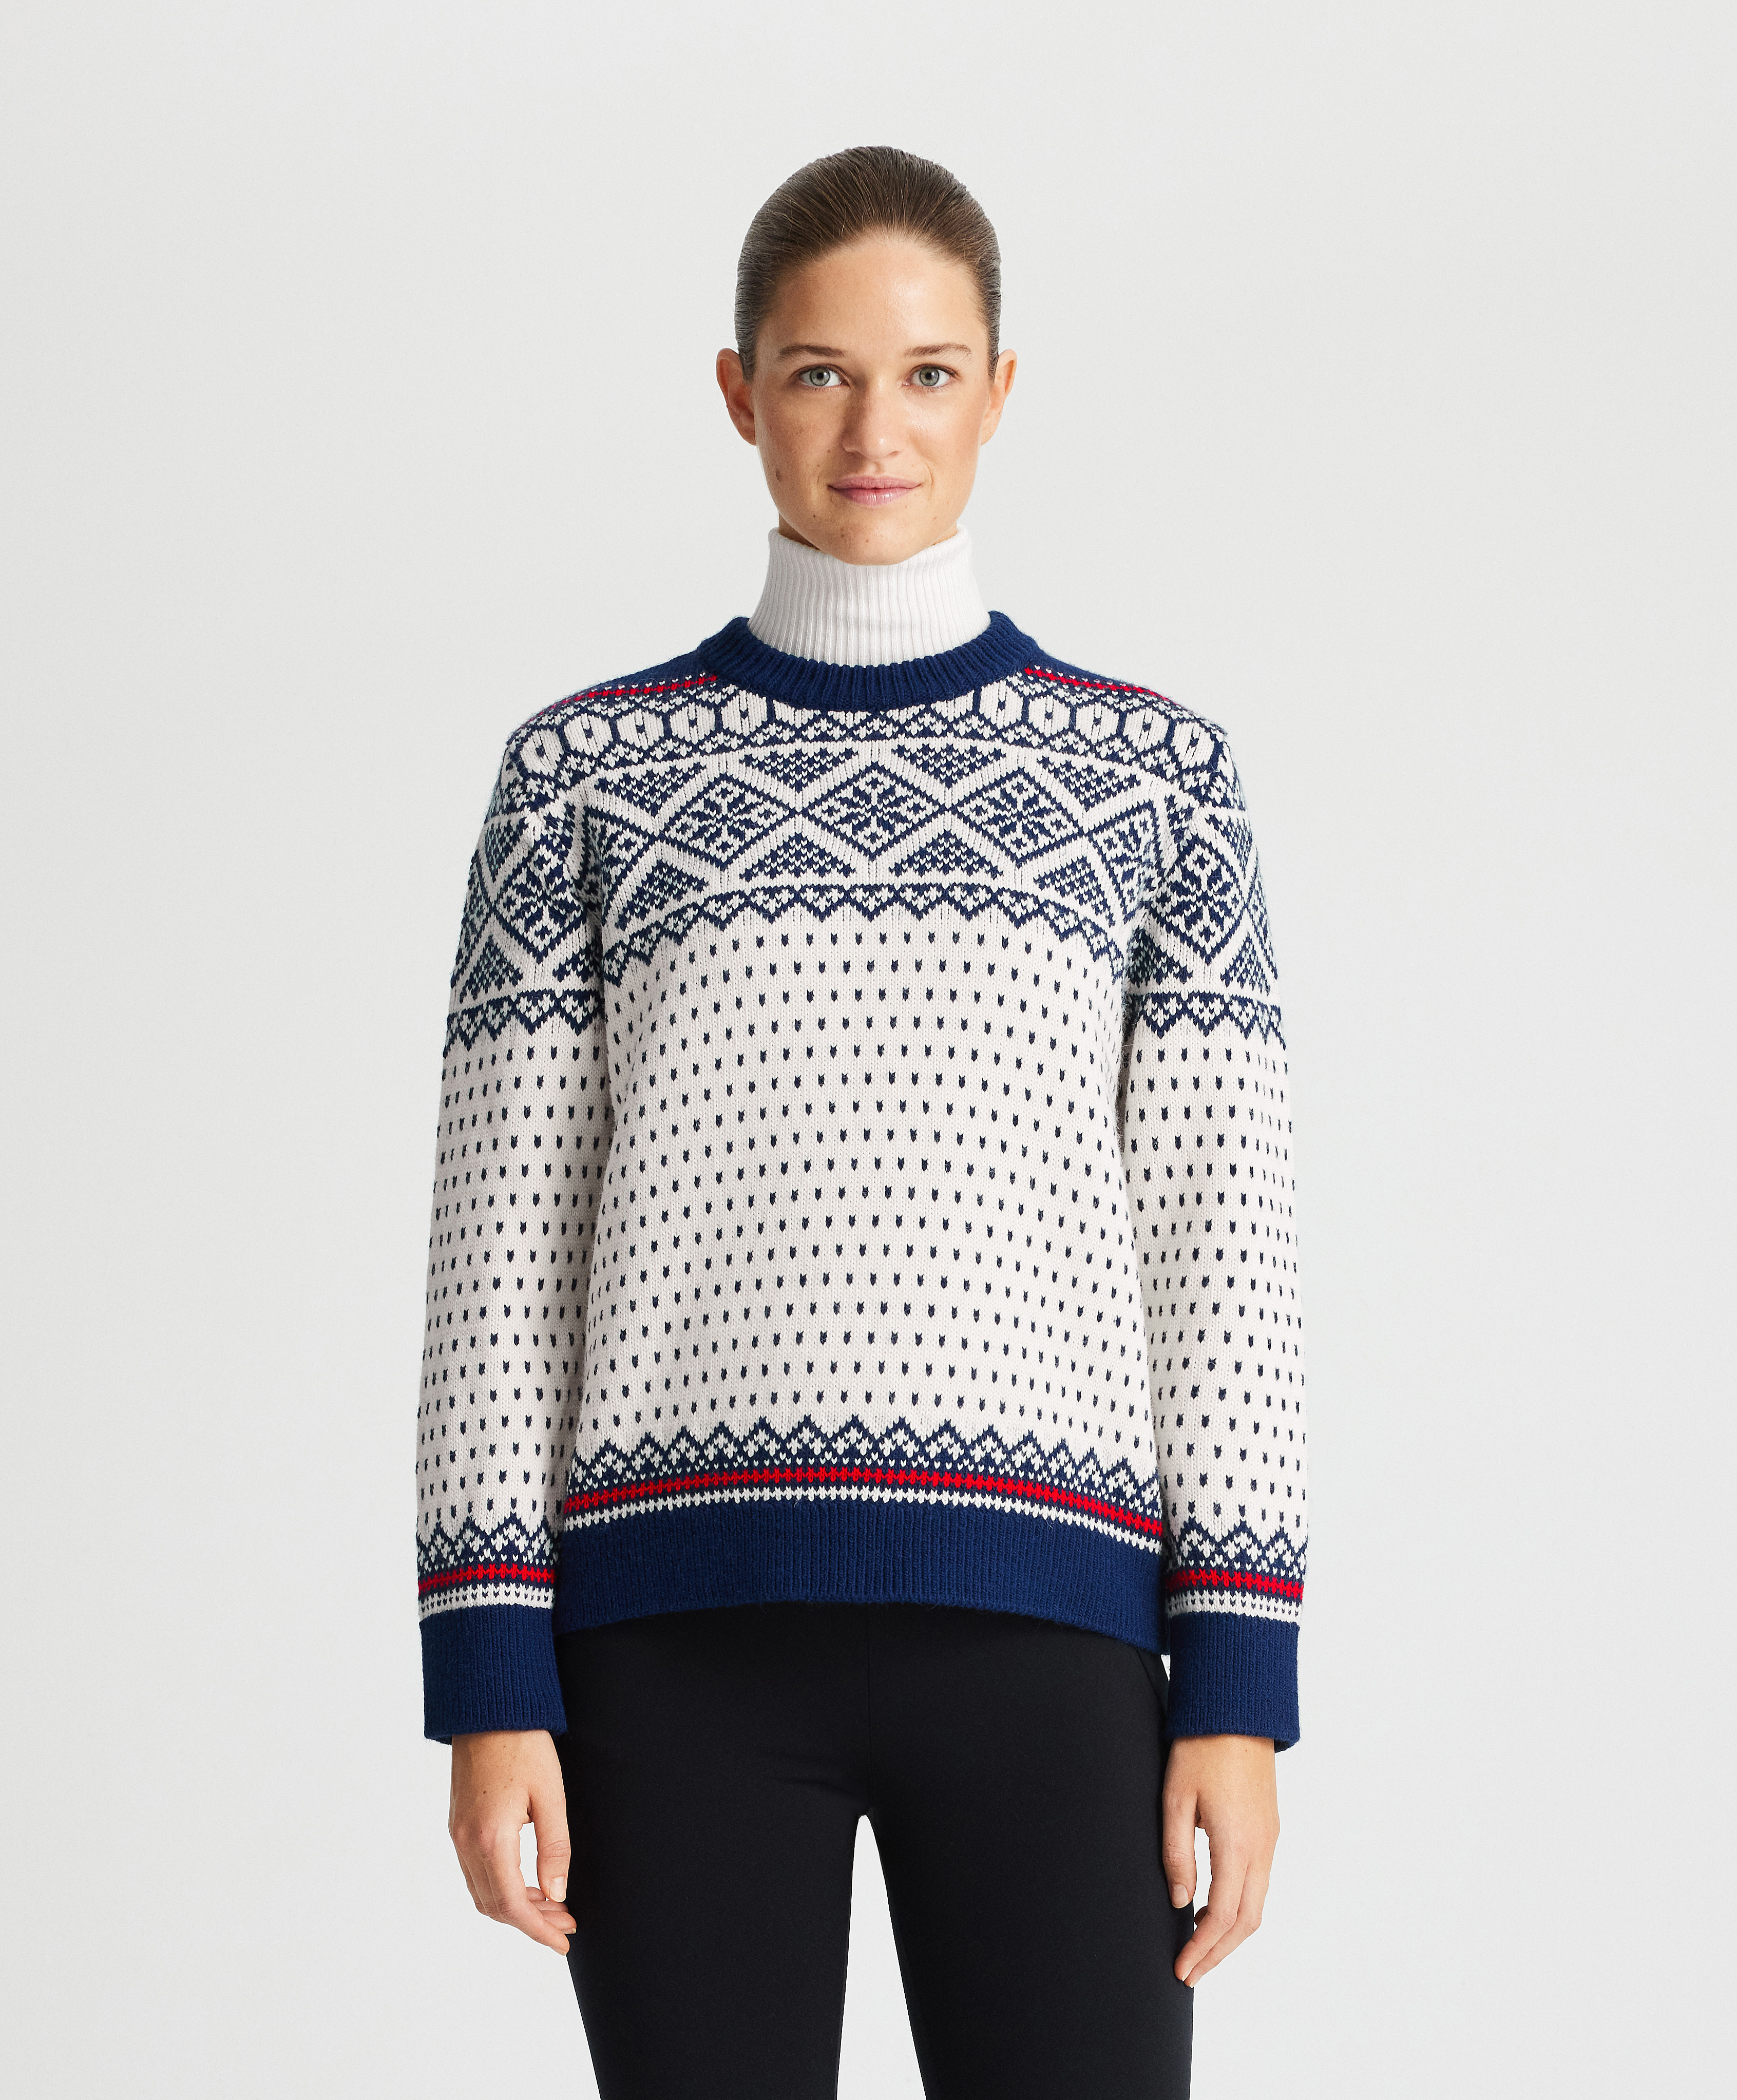 Geometric jacquard knit jumper